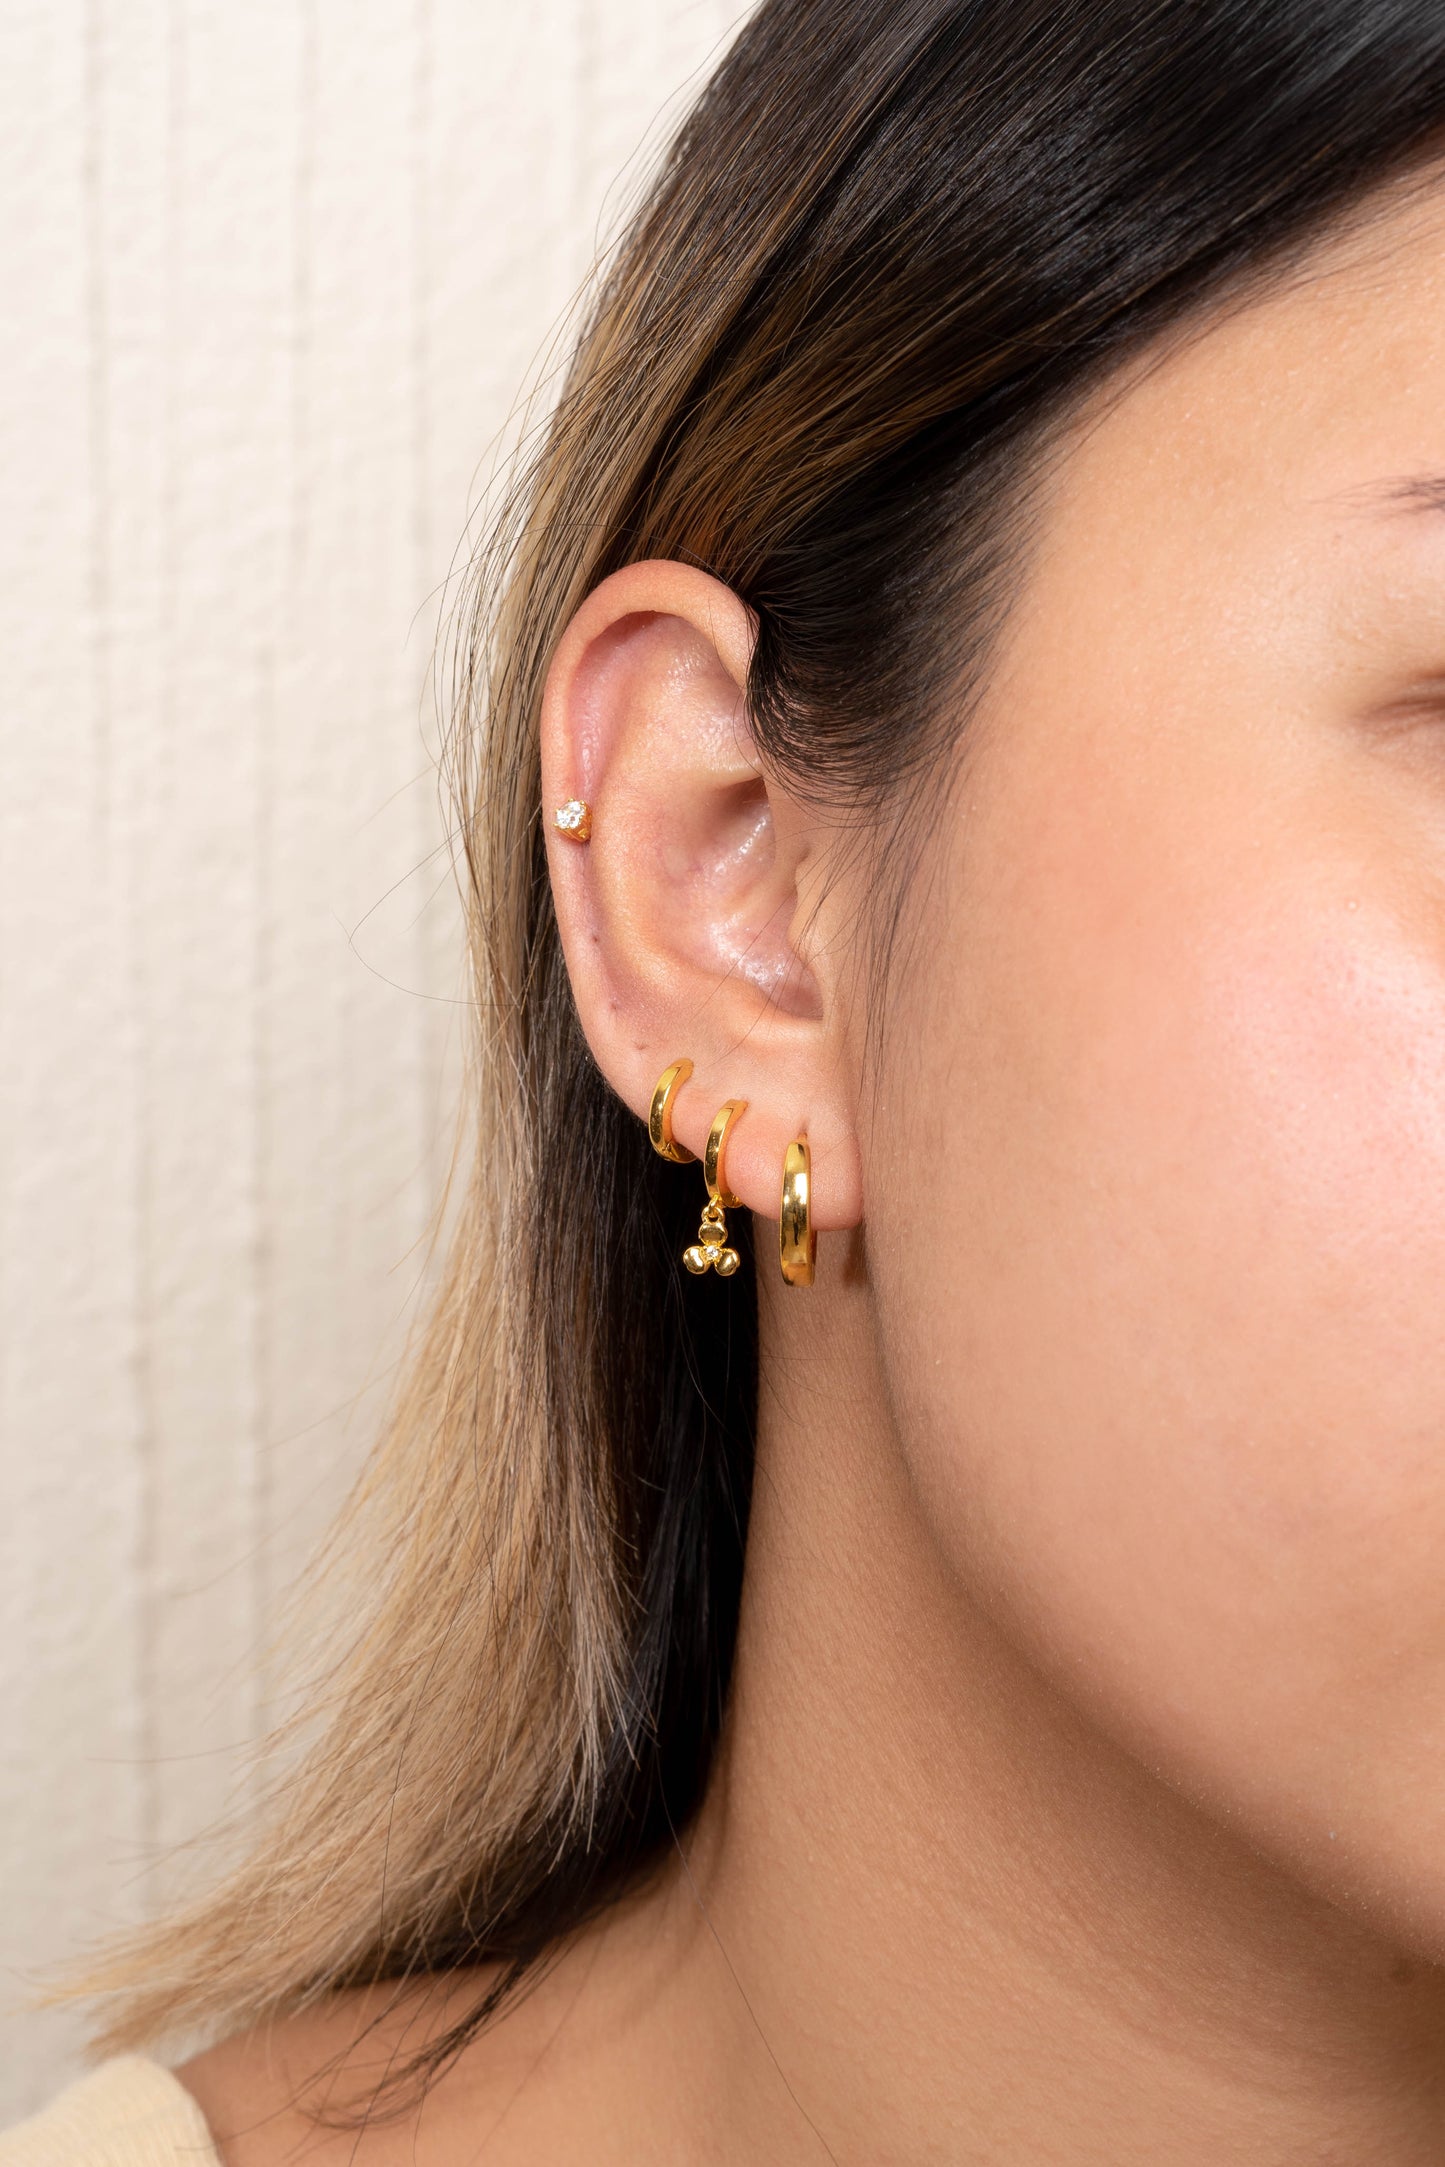 Klover 24k Gold Earring Set